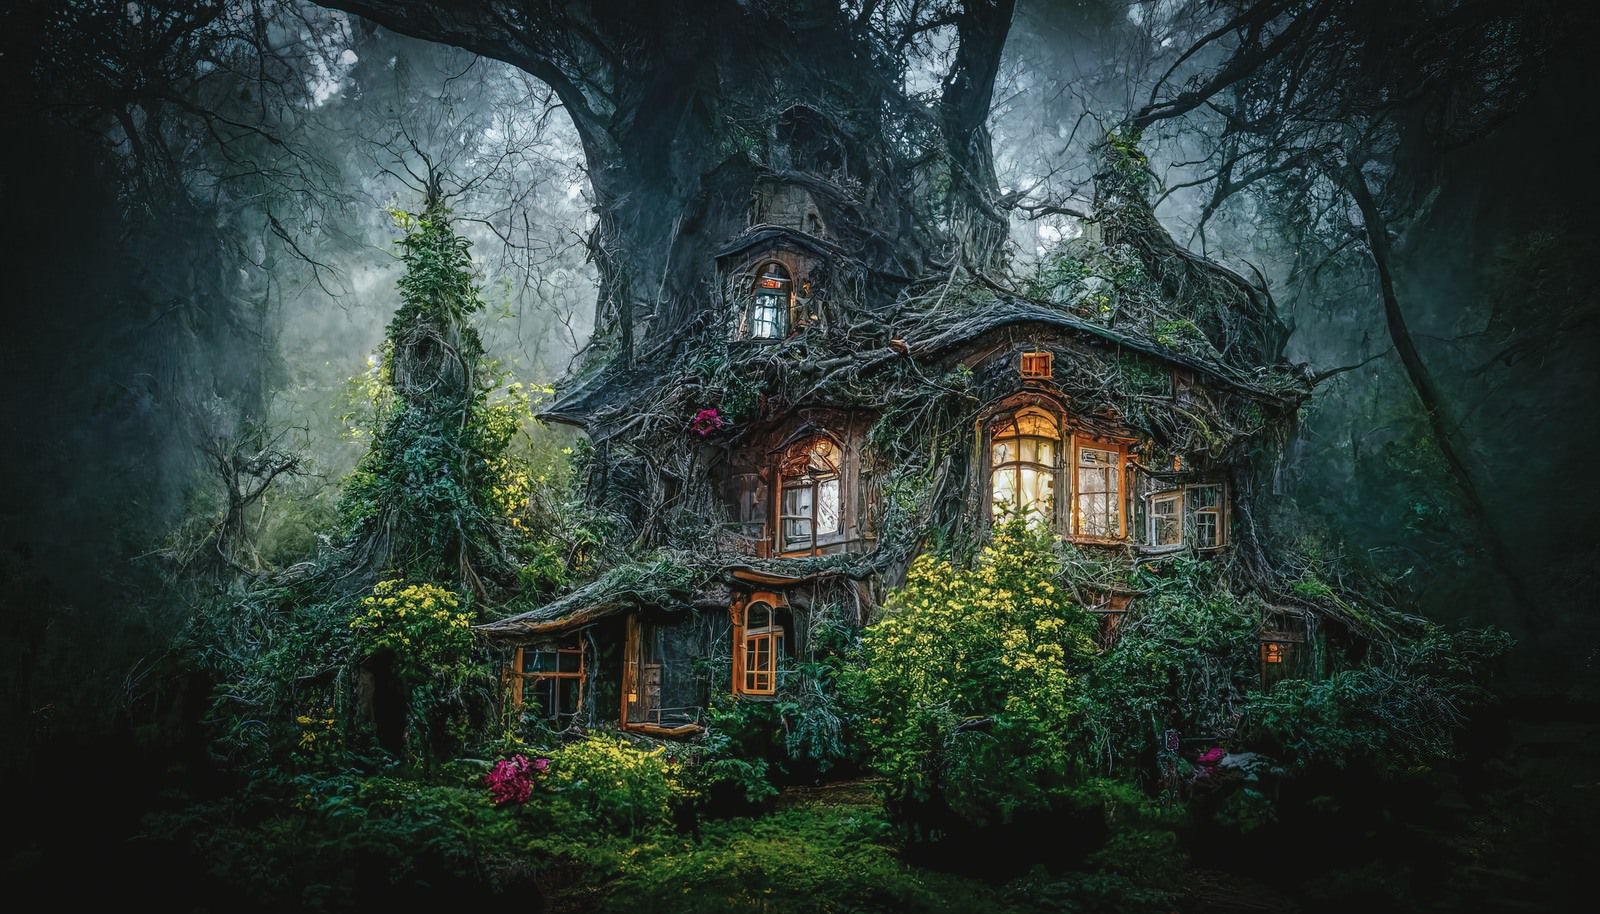 「根が這う魔女の家」の写真